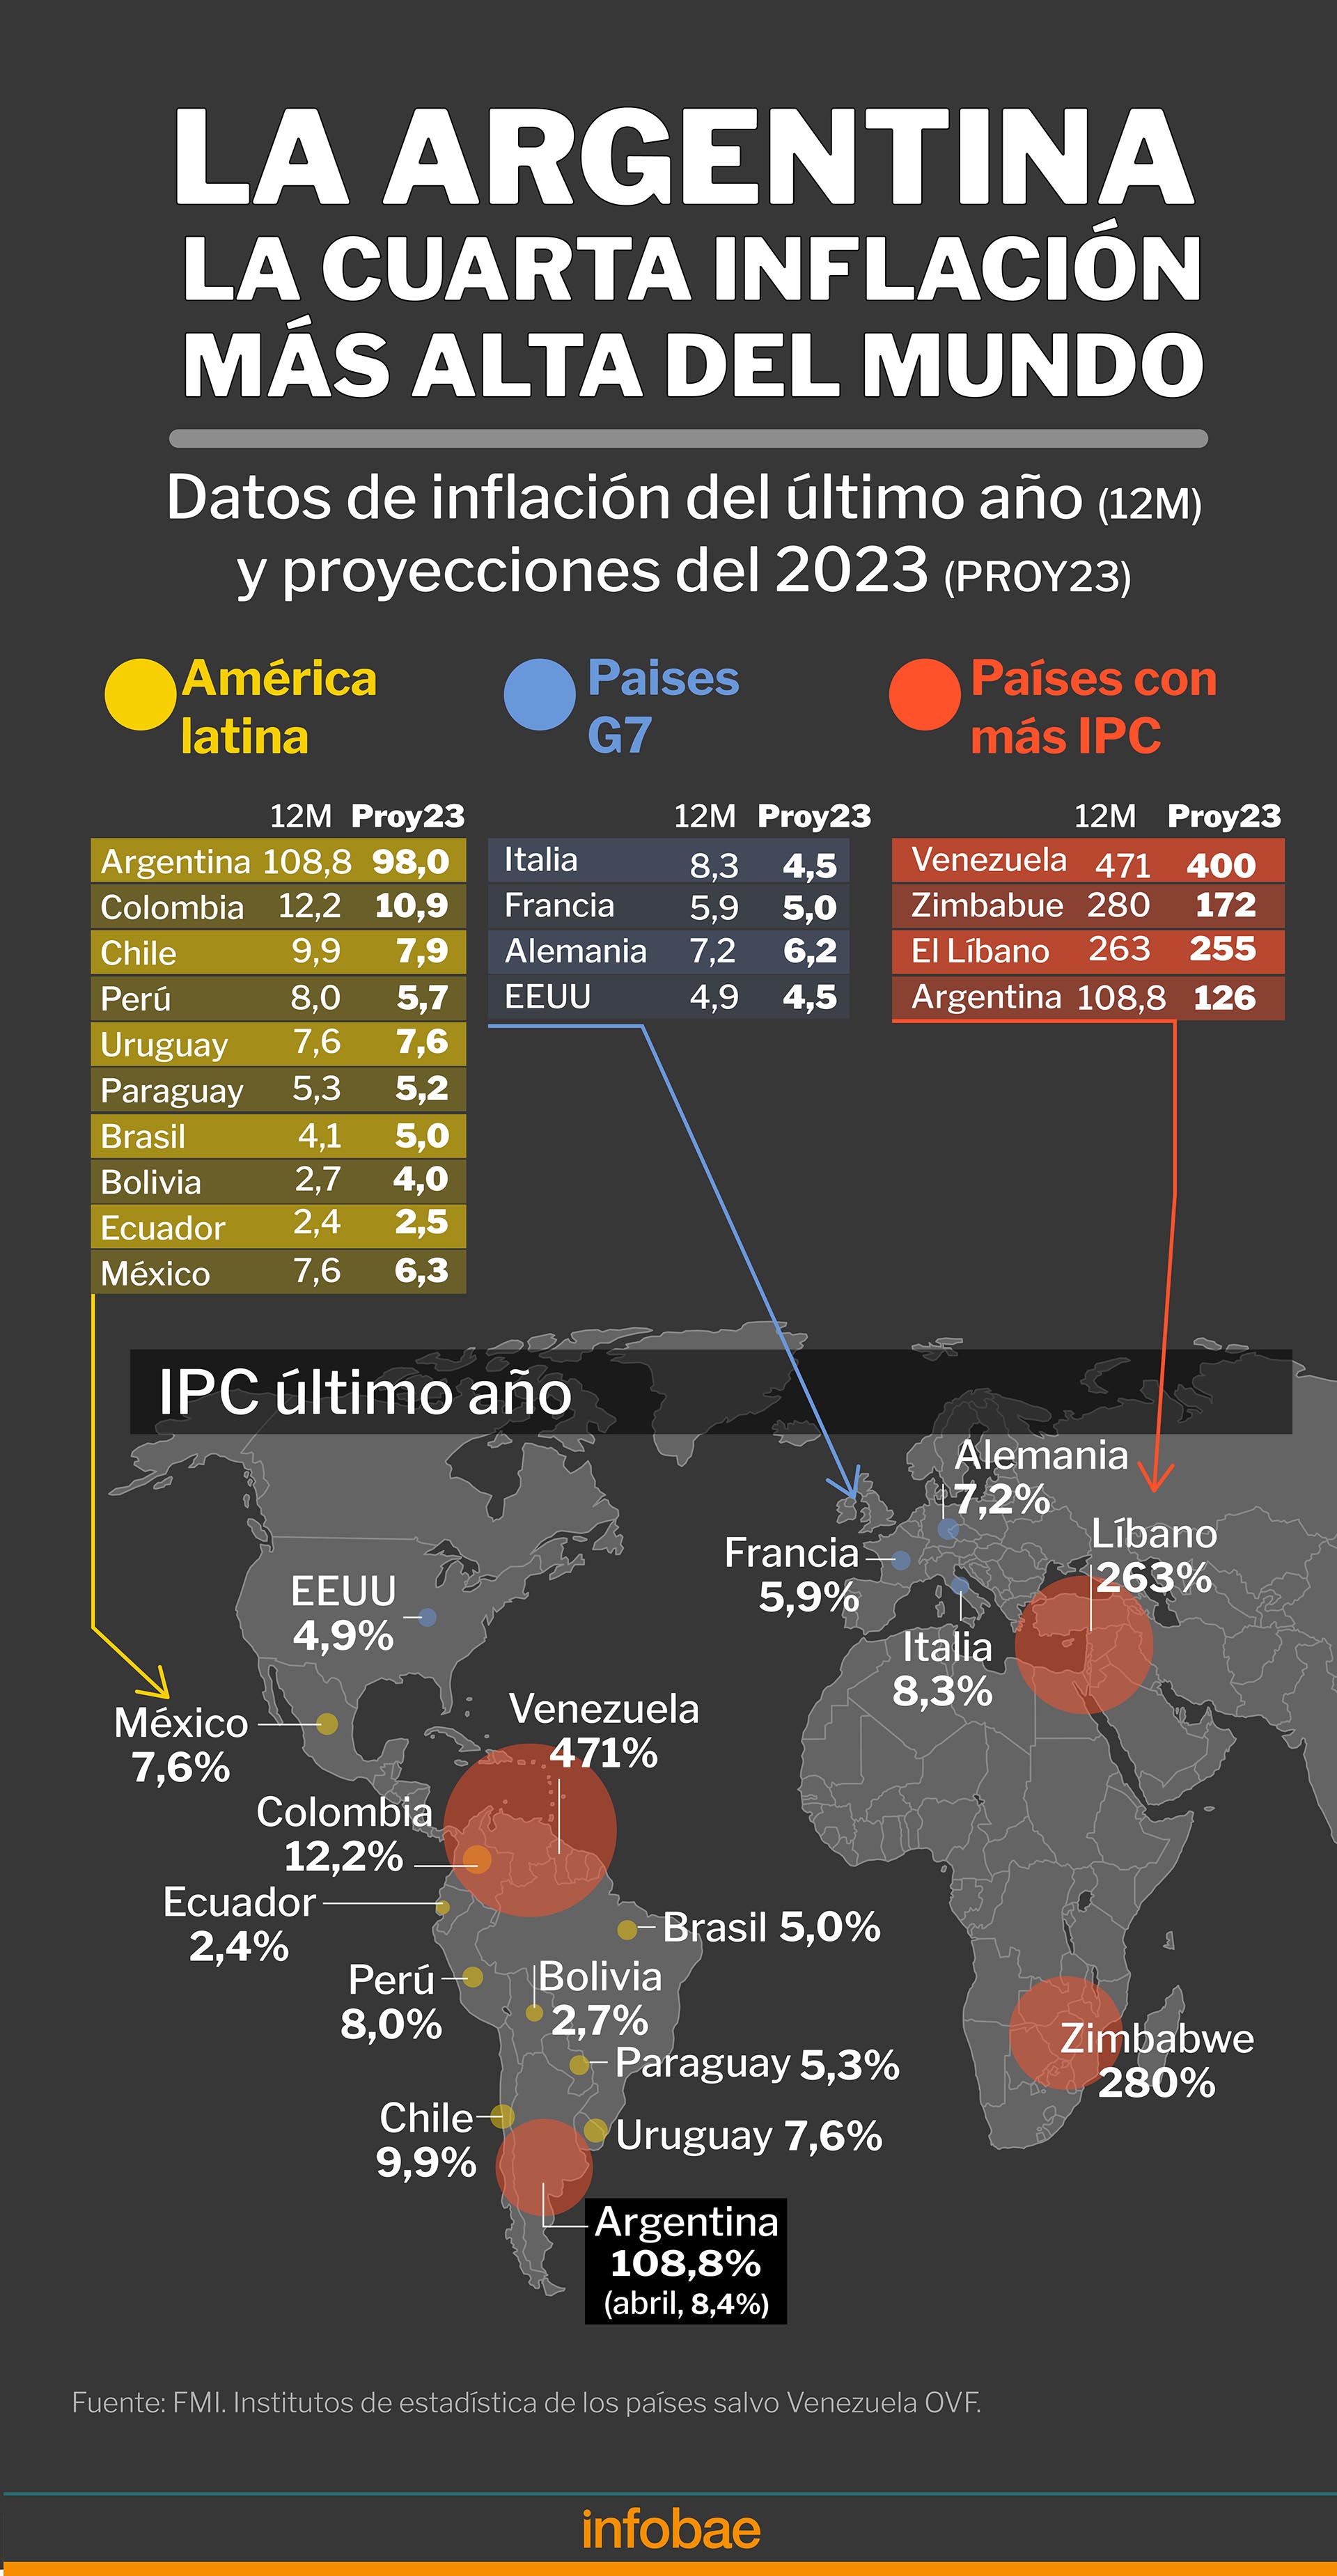 IPC del último año en un grupo de países y proyección 2023
Infografía de Marcelo Regalado